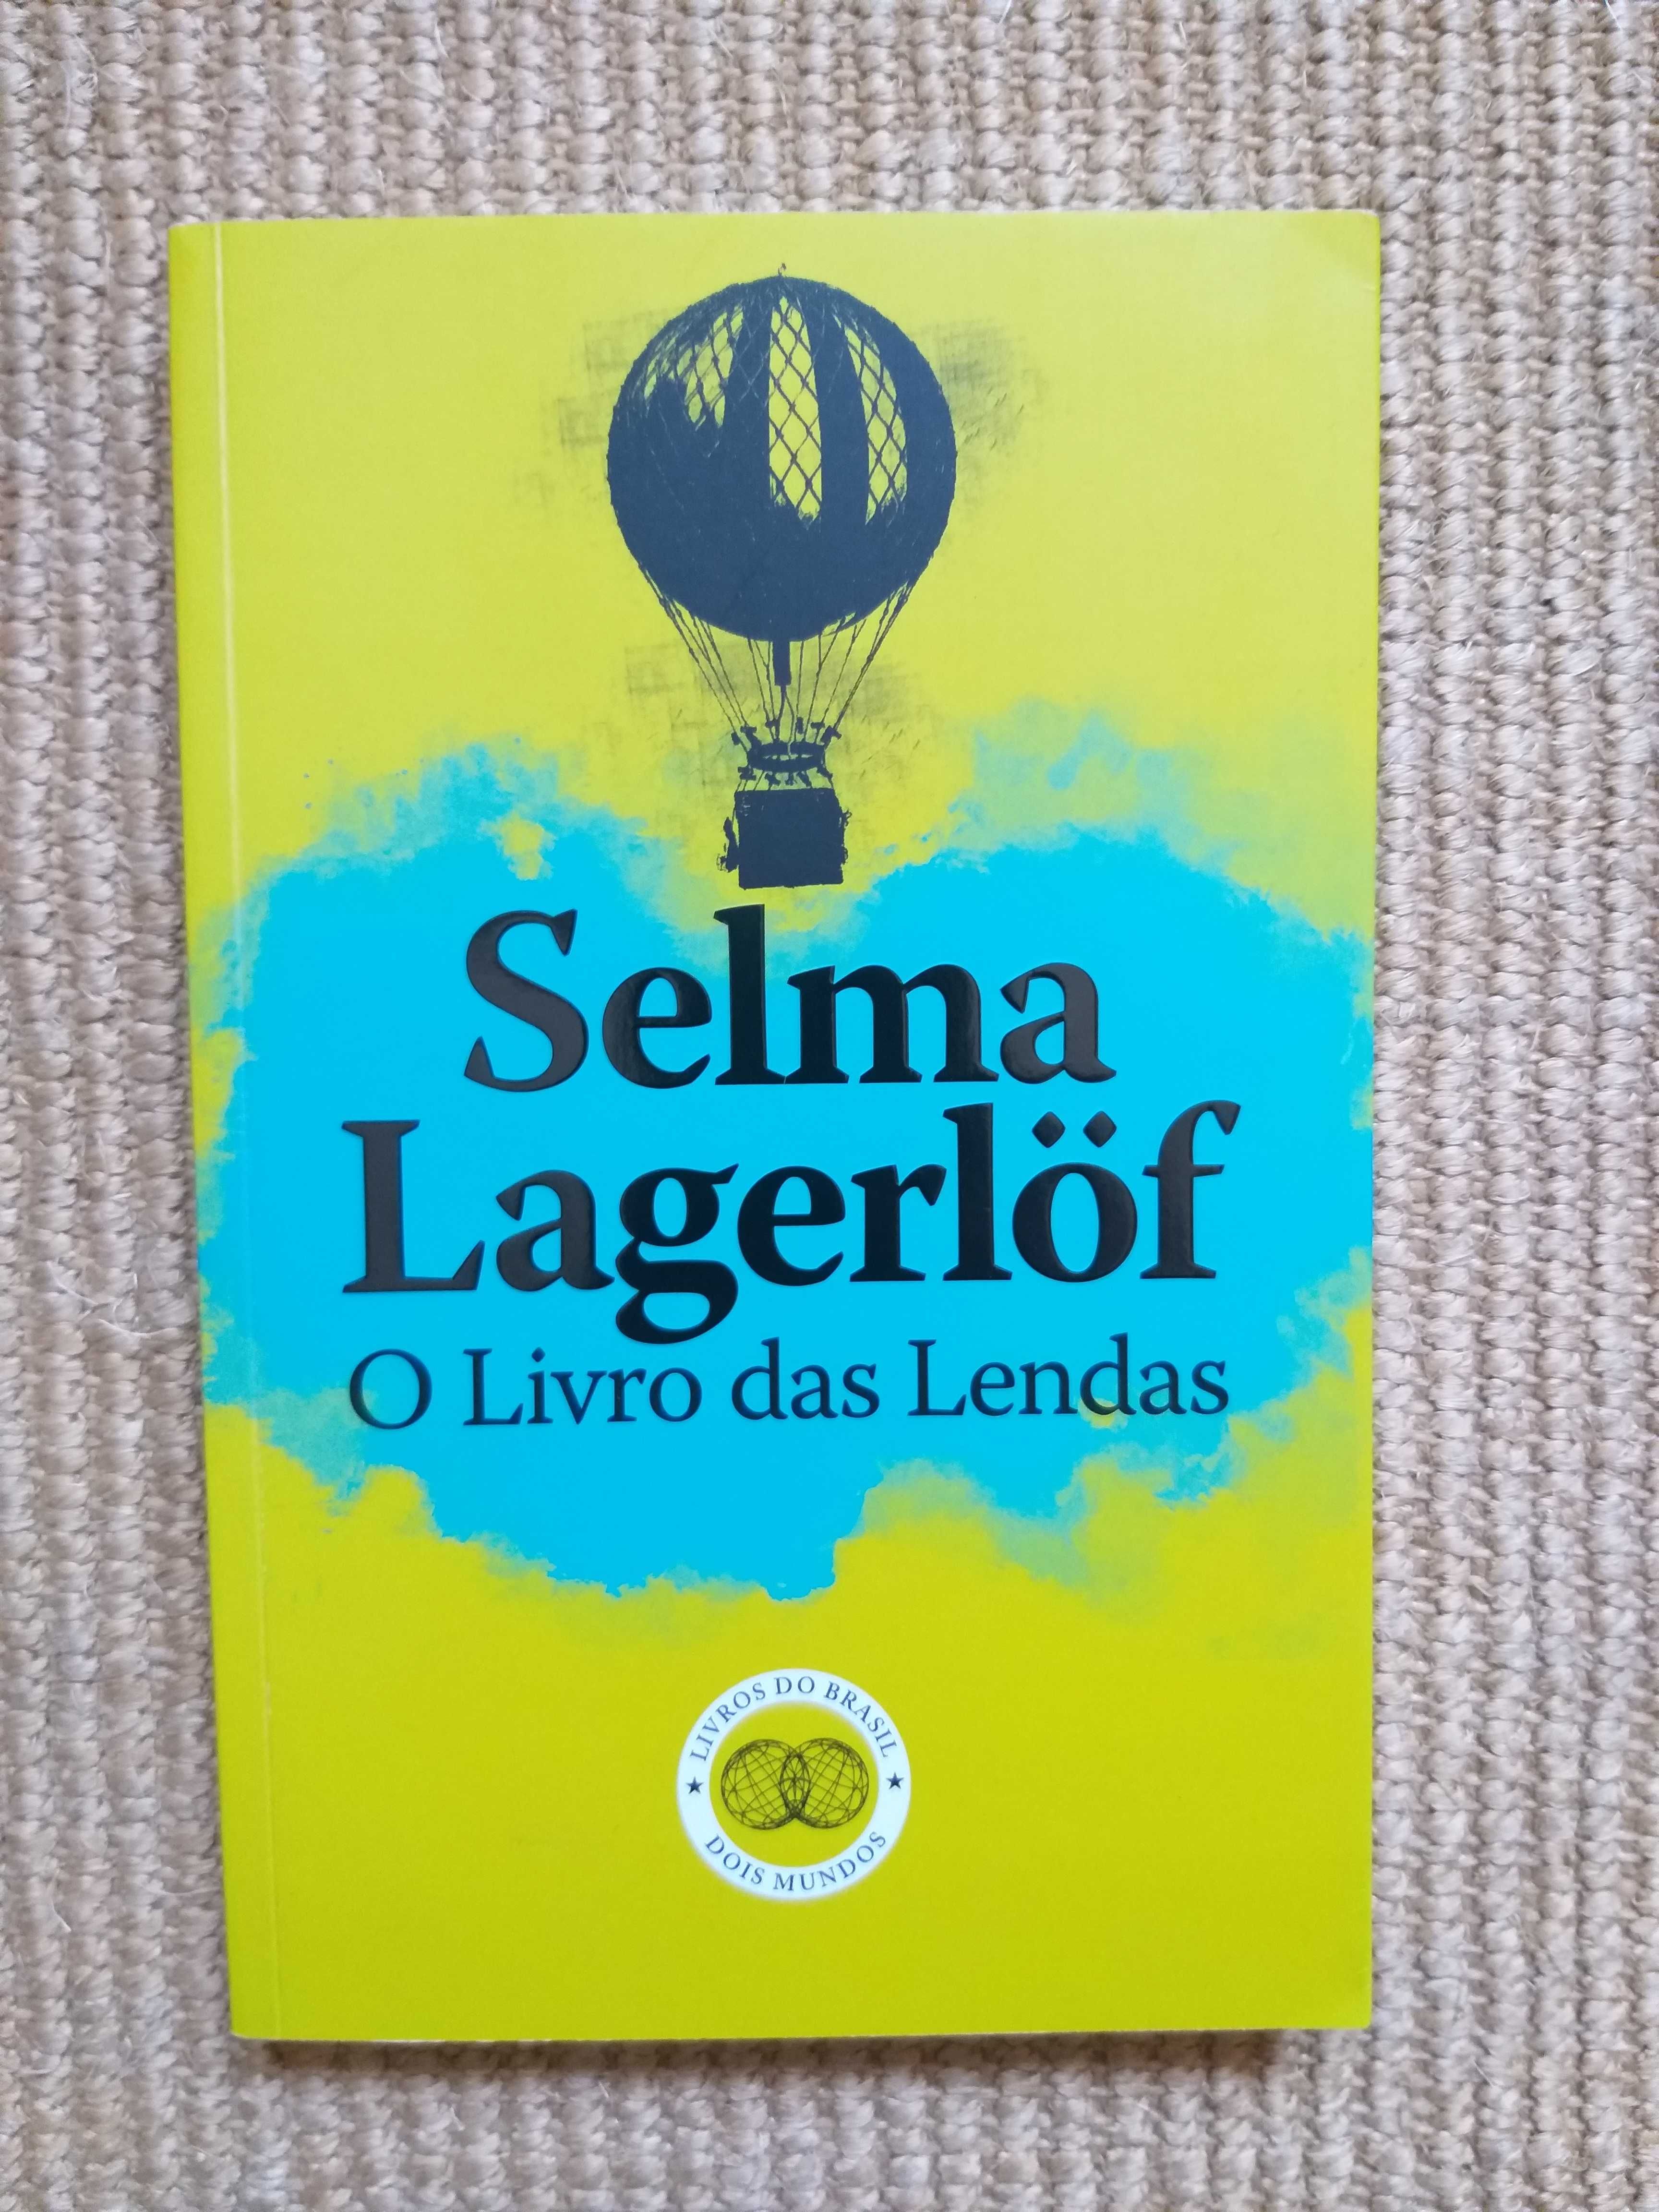 Livro "O Livro das Lendas", de Selma Lagerlöf (Coleção Dois Mundos)